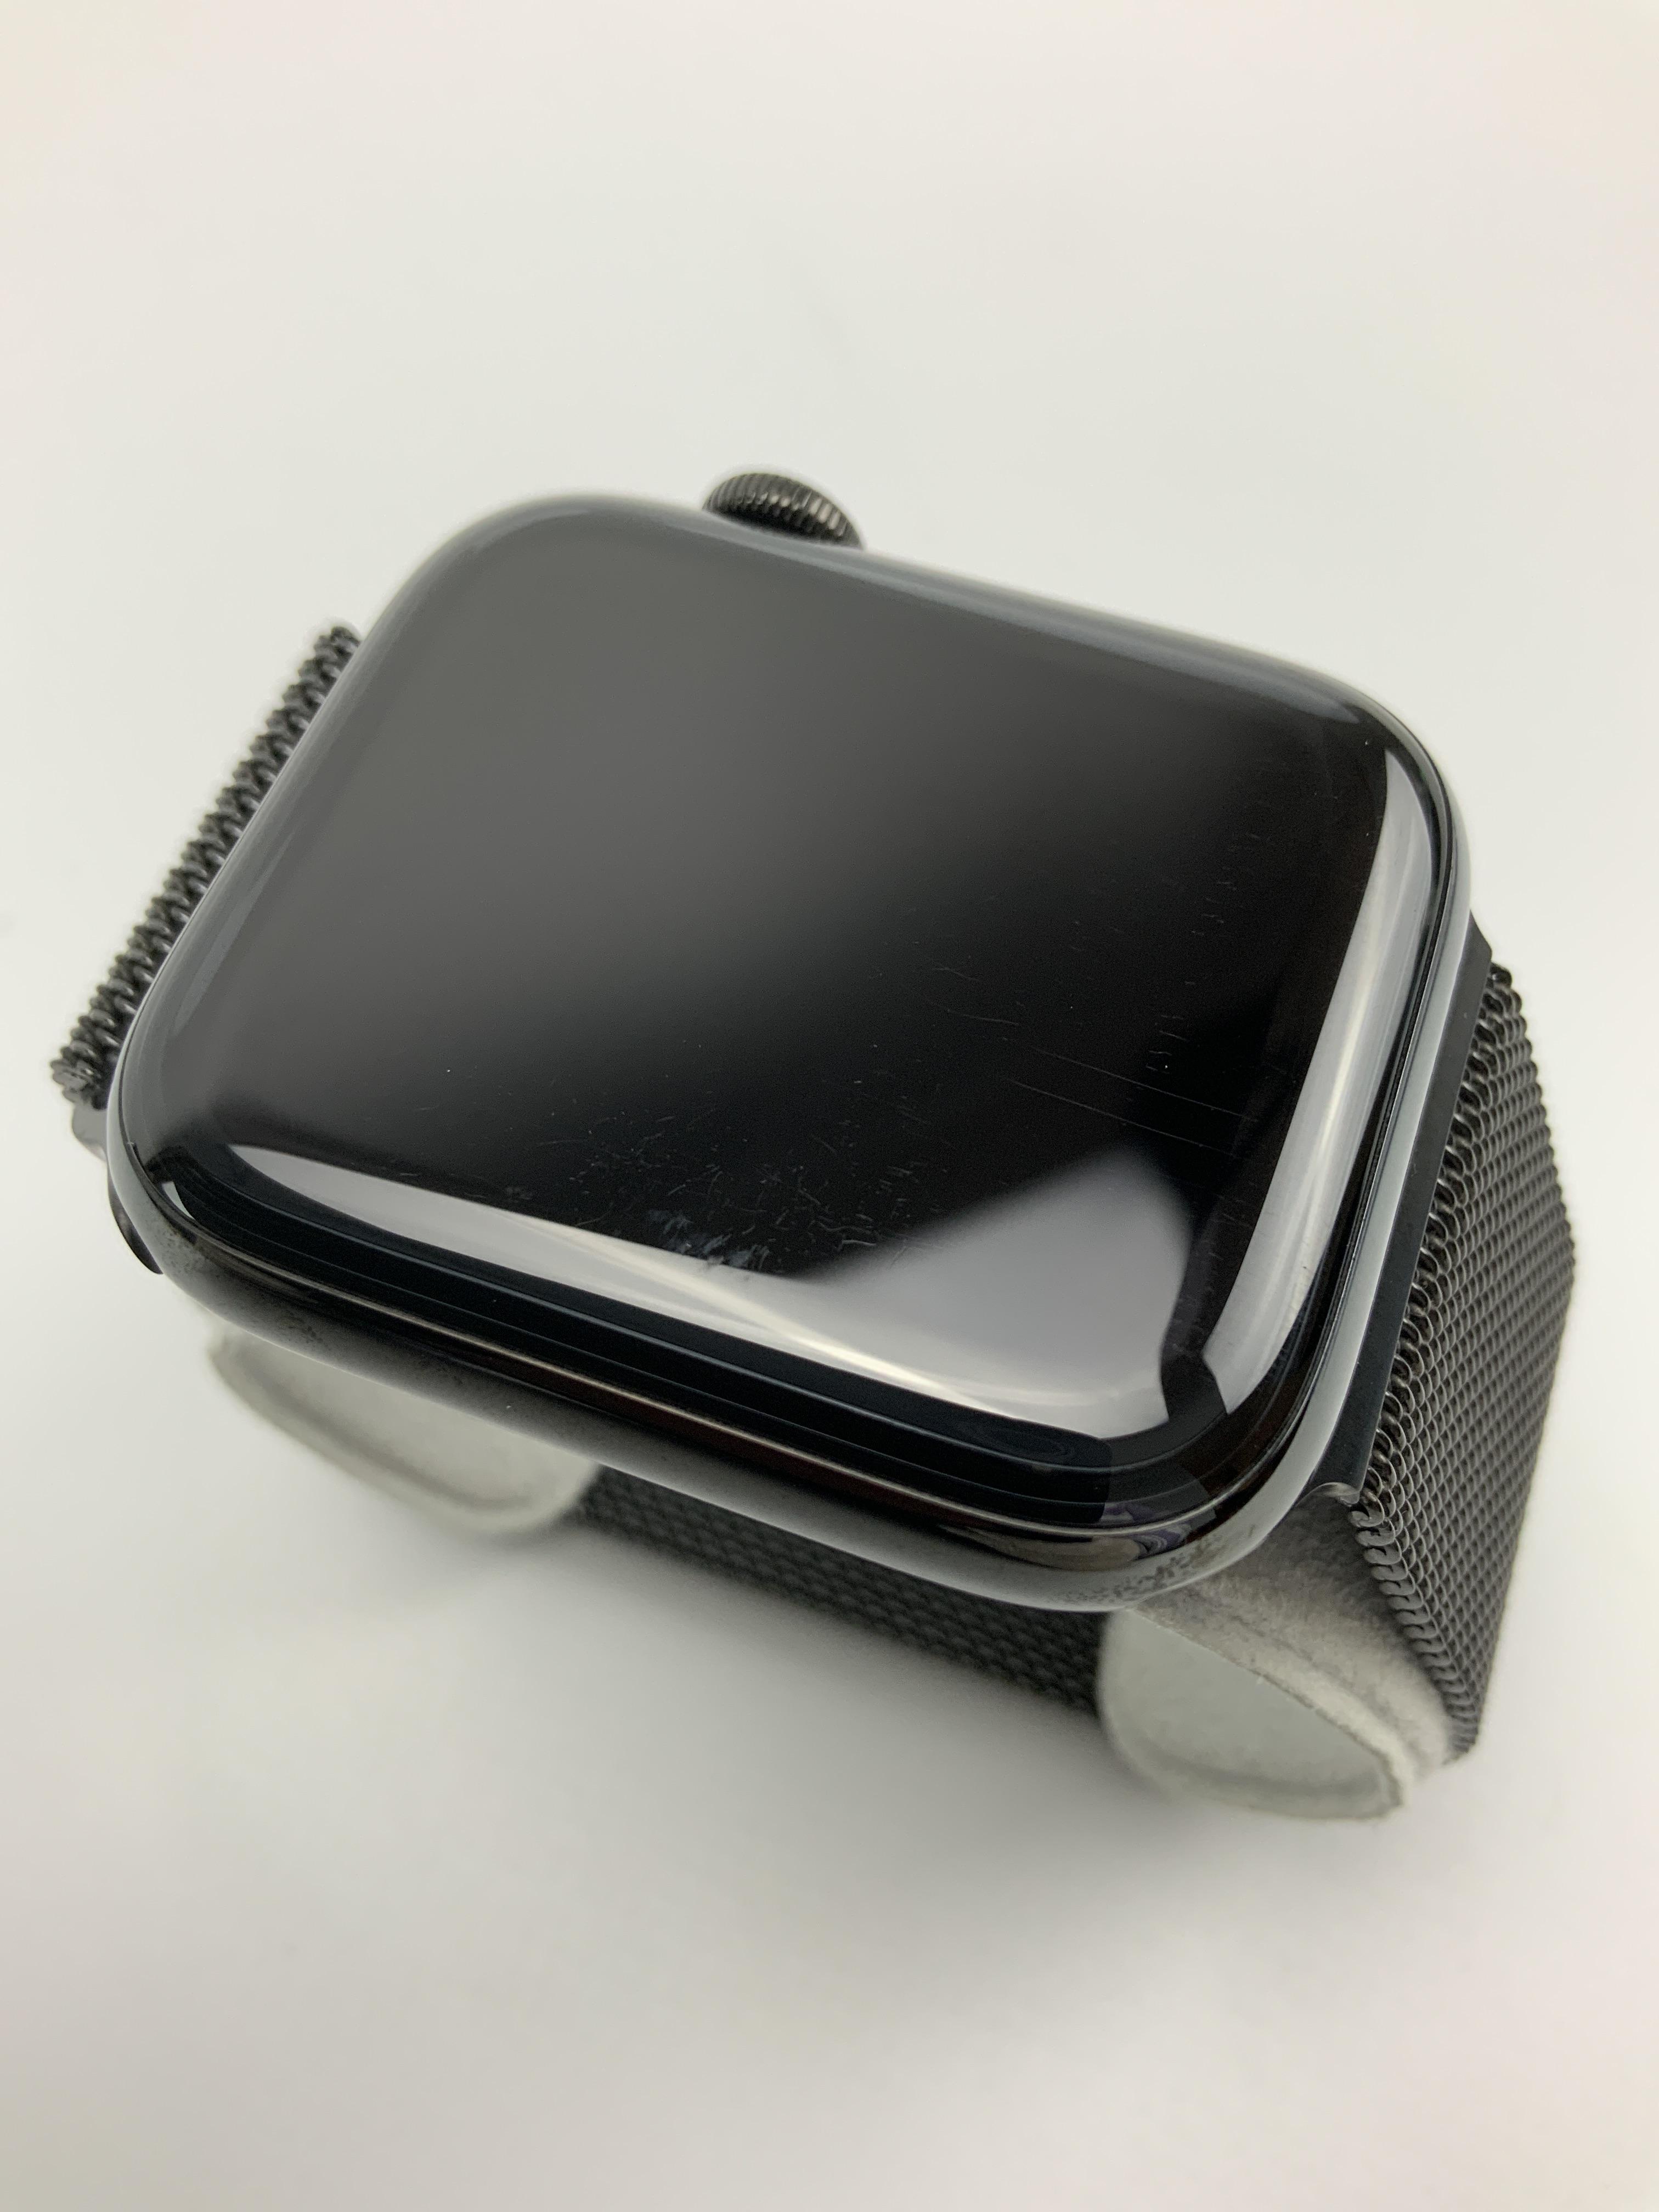 Watch Series 5 Steel Cellular (44mm), Space Black, Afbeelding 2